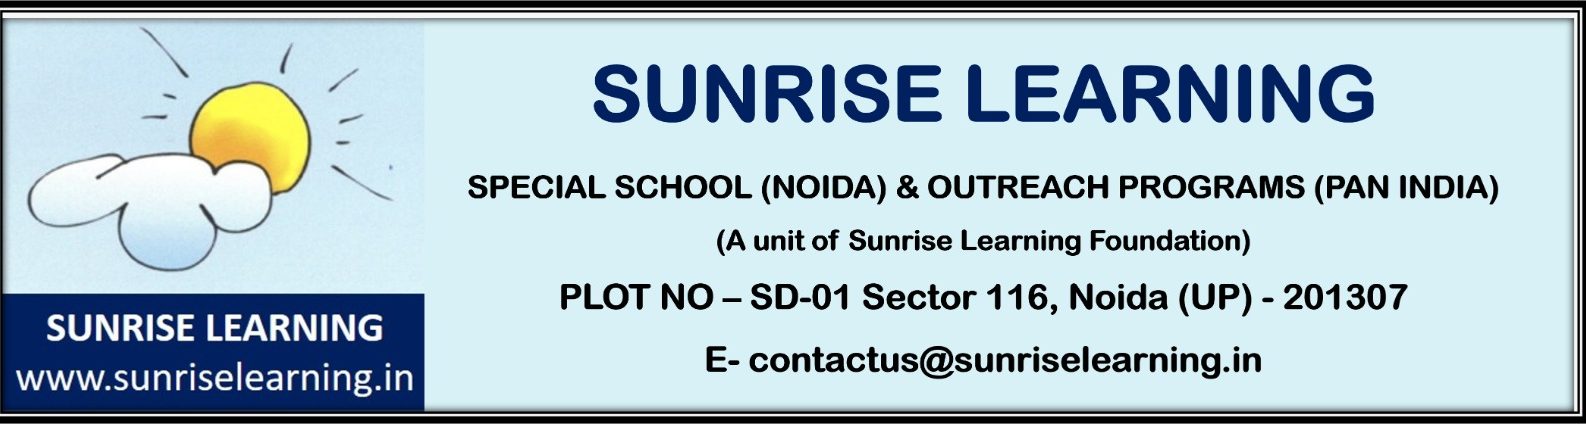 Sunrise Learning Foundation logo